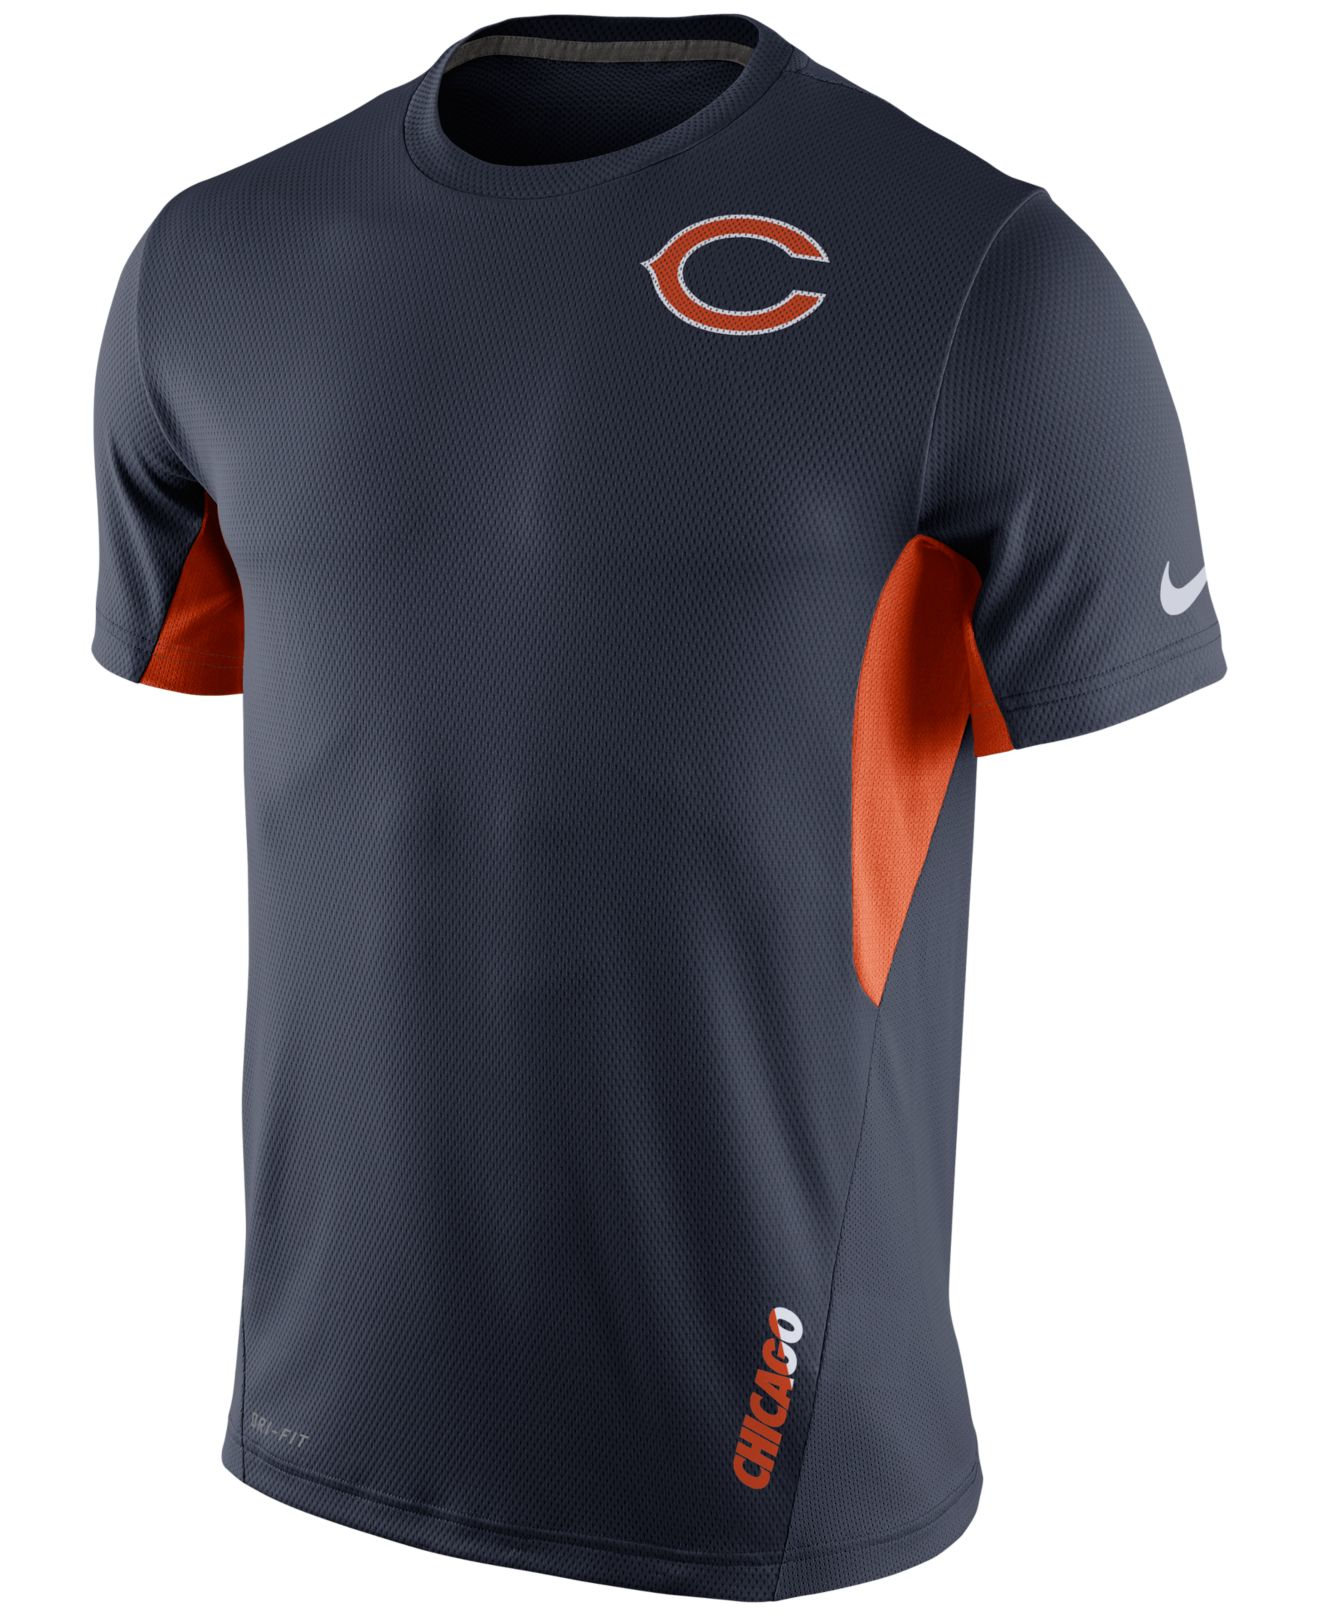 Lyst - Nike Men's Chicago Bears Vapor T-shirt in Blue for Men